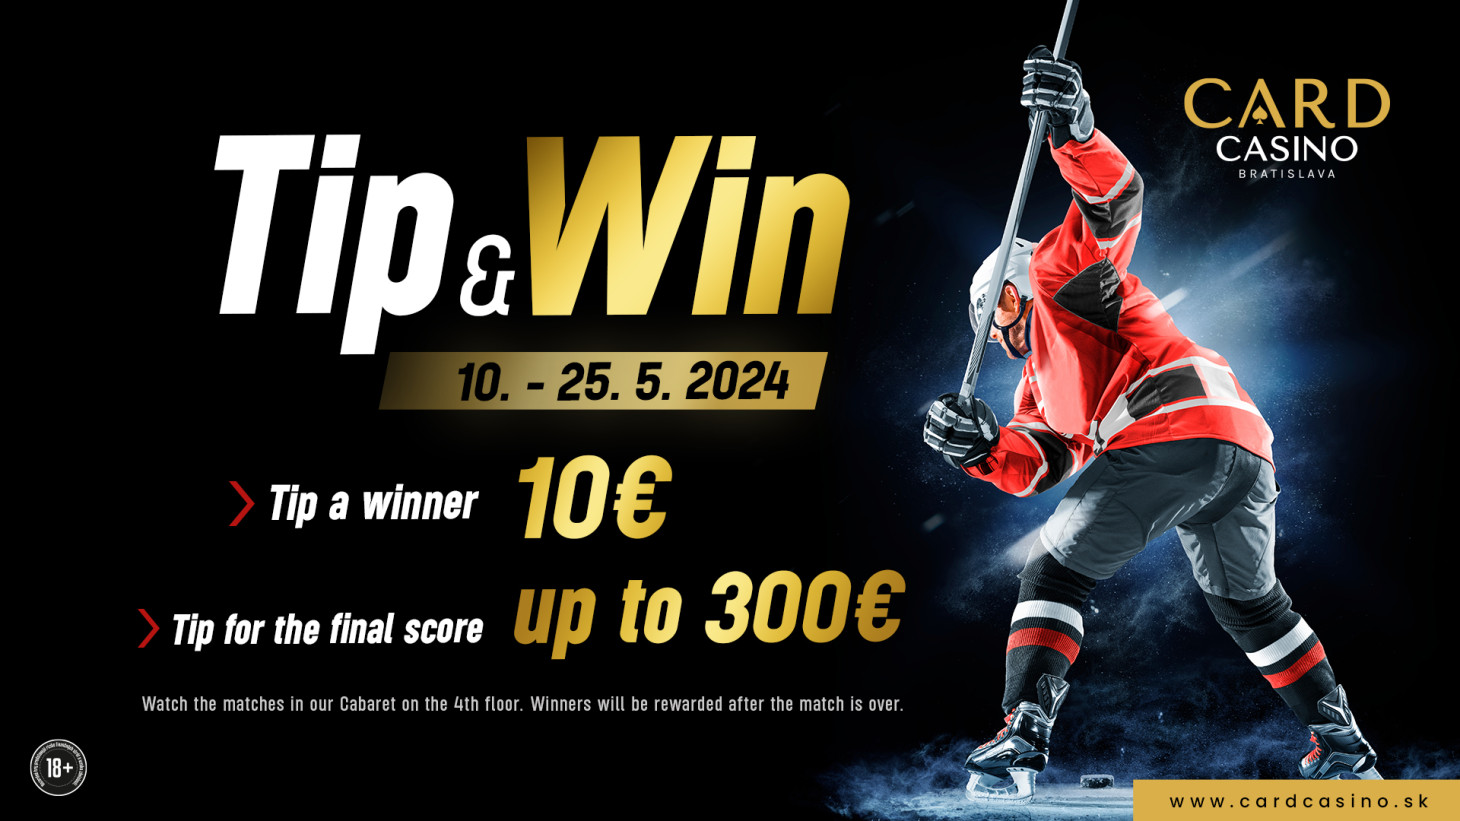 Wetten Sie im Casino auf die Eishockey-Weltmeisterschaft und gewinnen Sie Hunderte Euros